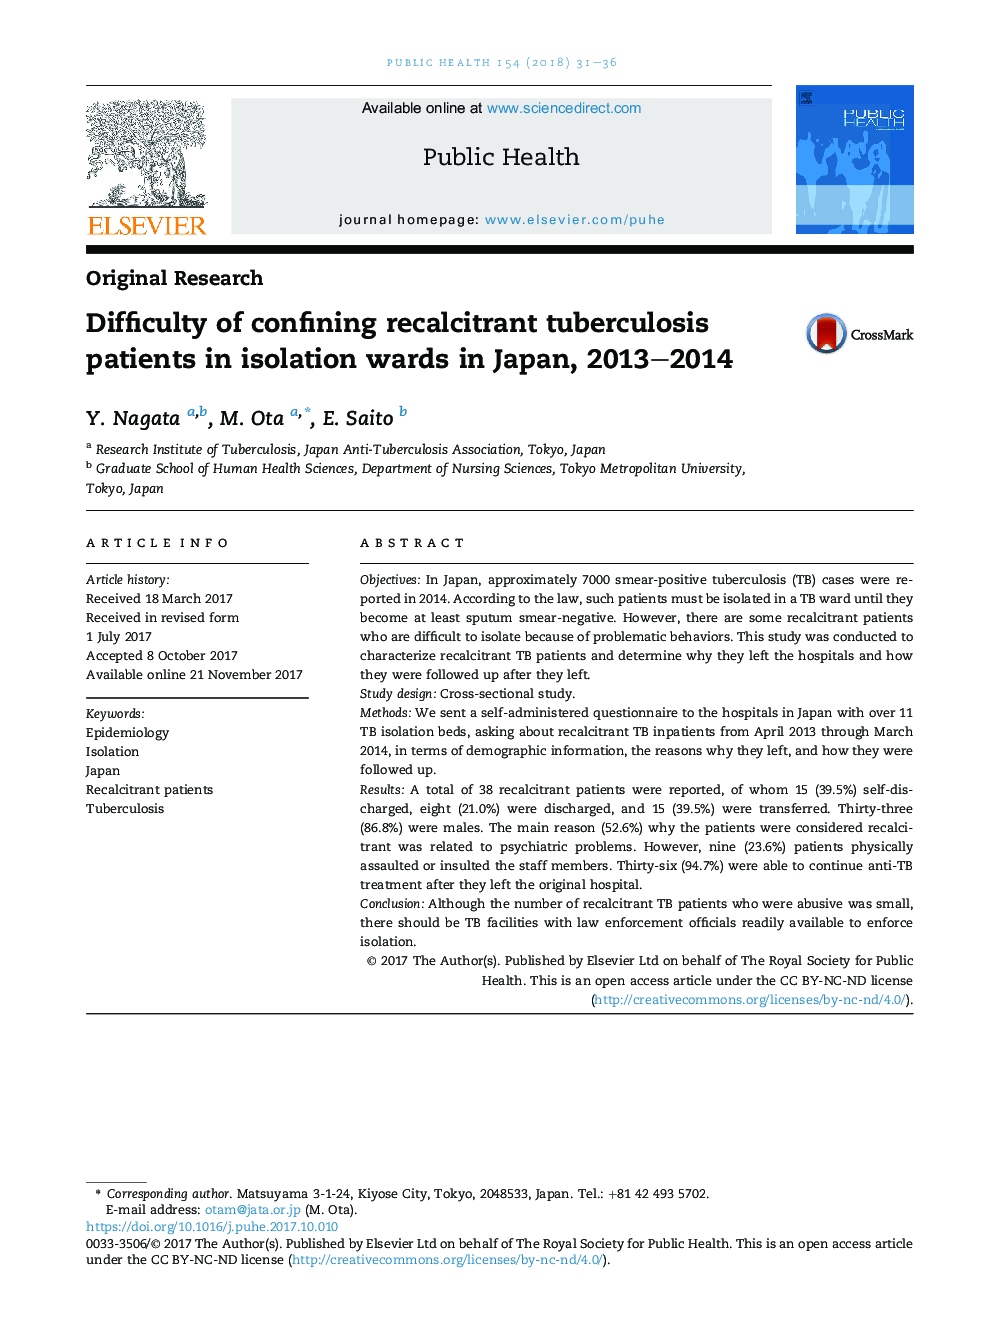 دشواری محدود کردن بیماران سل خارج رحمی در بخش های انزوا در ژاپن، 2013-2014 